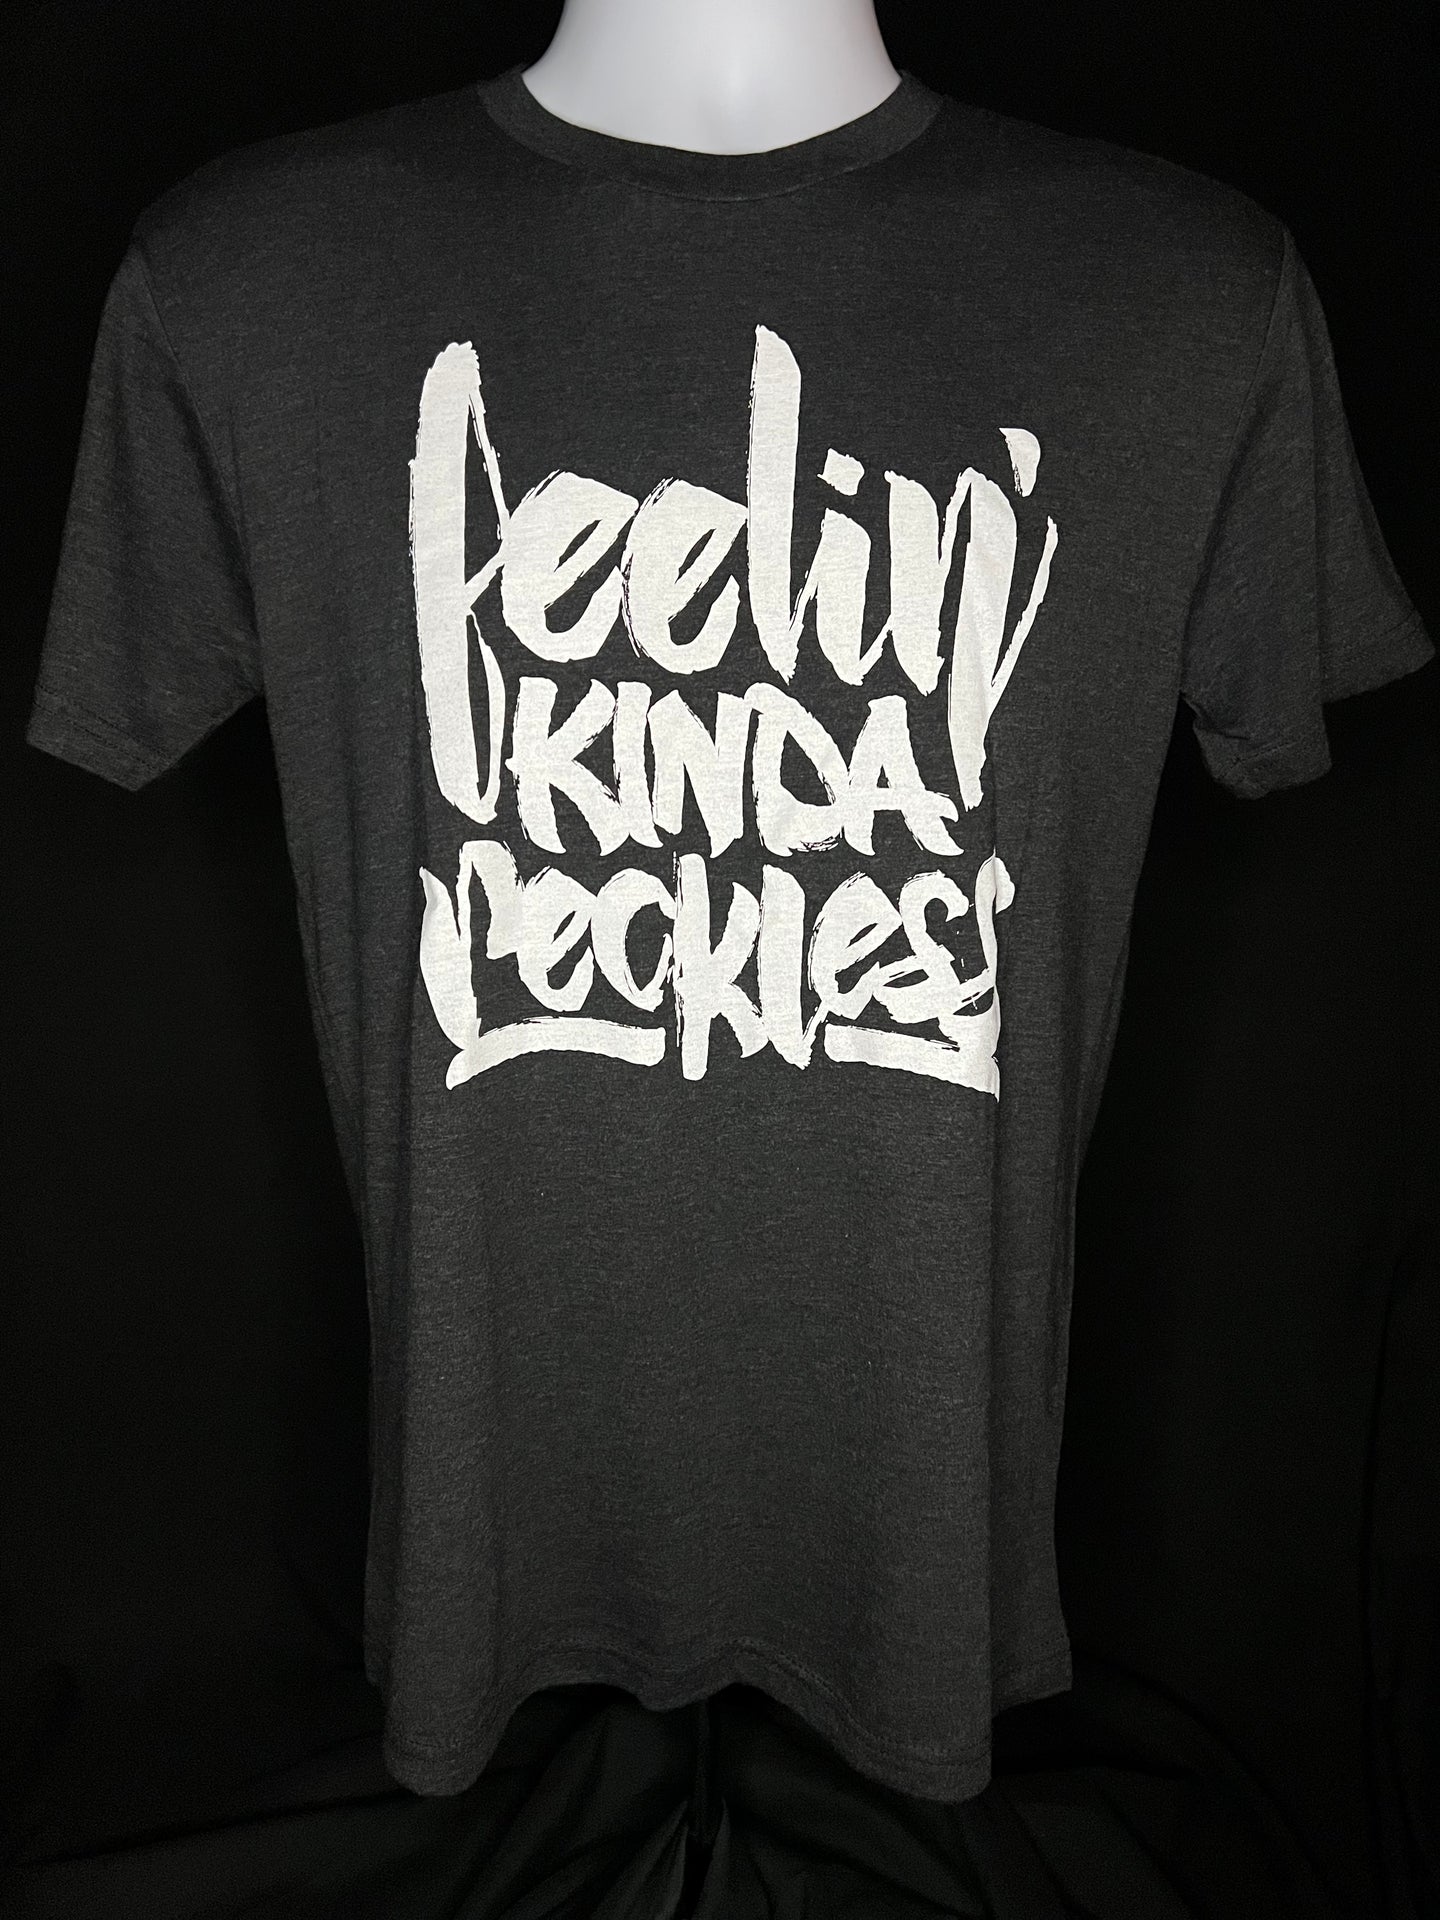 Feelin' Kinda Reckless - Black Tri-Blend T-Shirt (Men's/Women's)